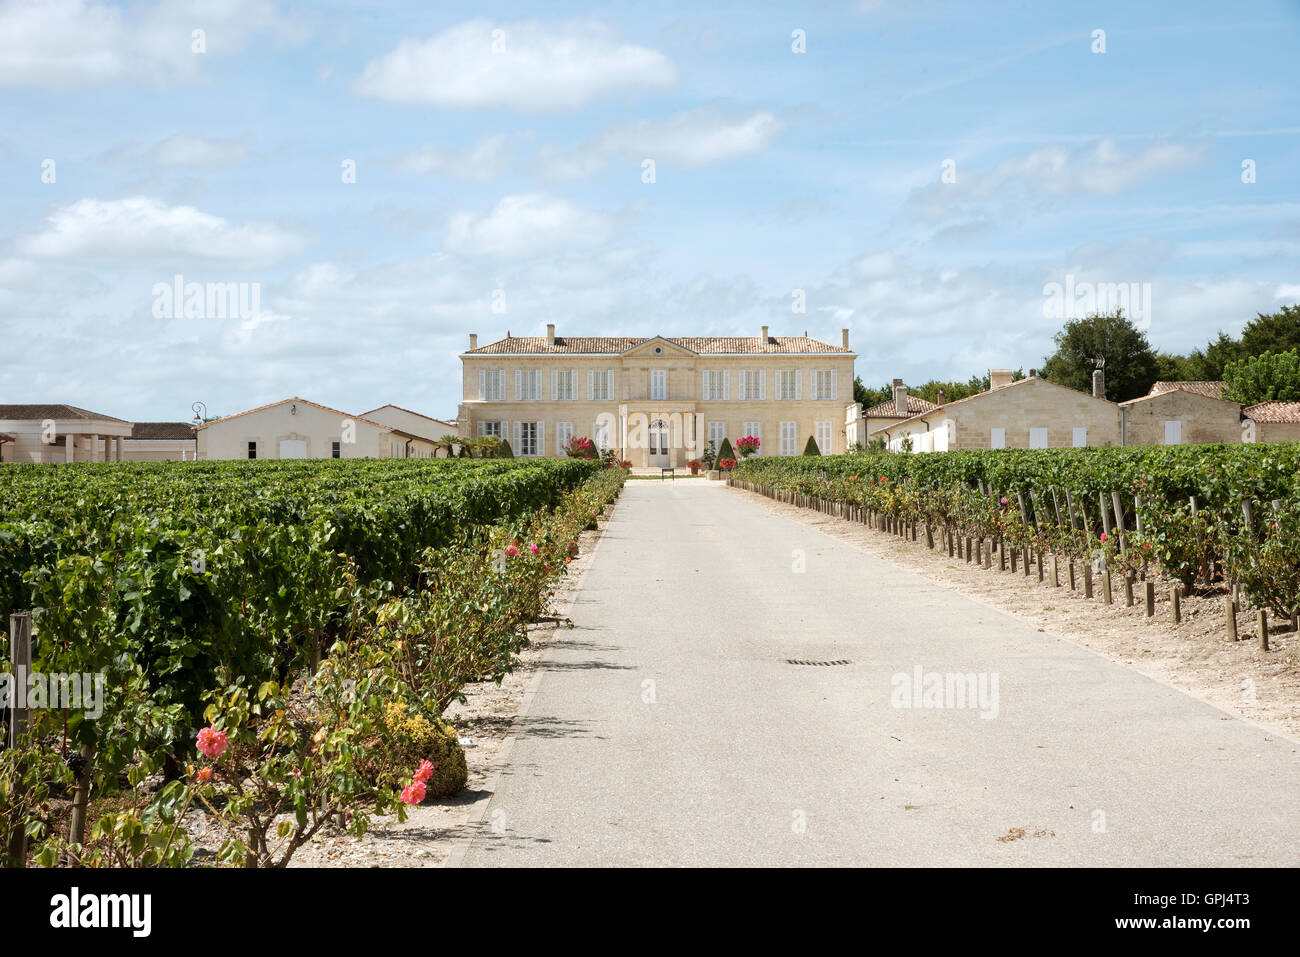 Saint Julien Bordeaux France. Chateau Branaire Ducru et vignes en Saint Julien situé le long de la route des vins du Médoc Banque D'Images